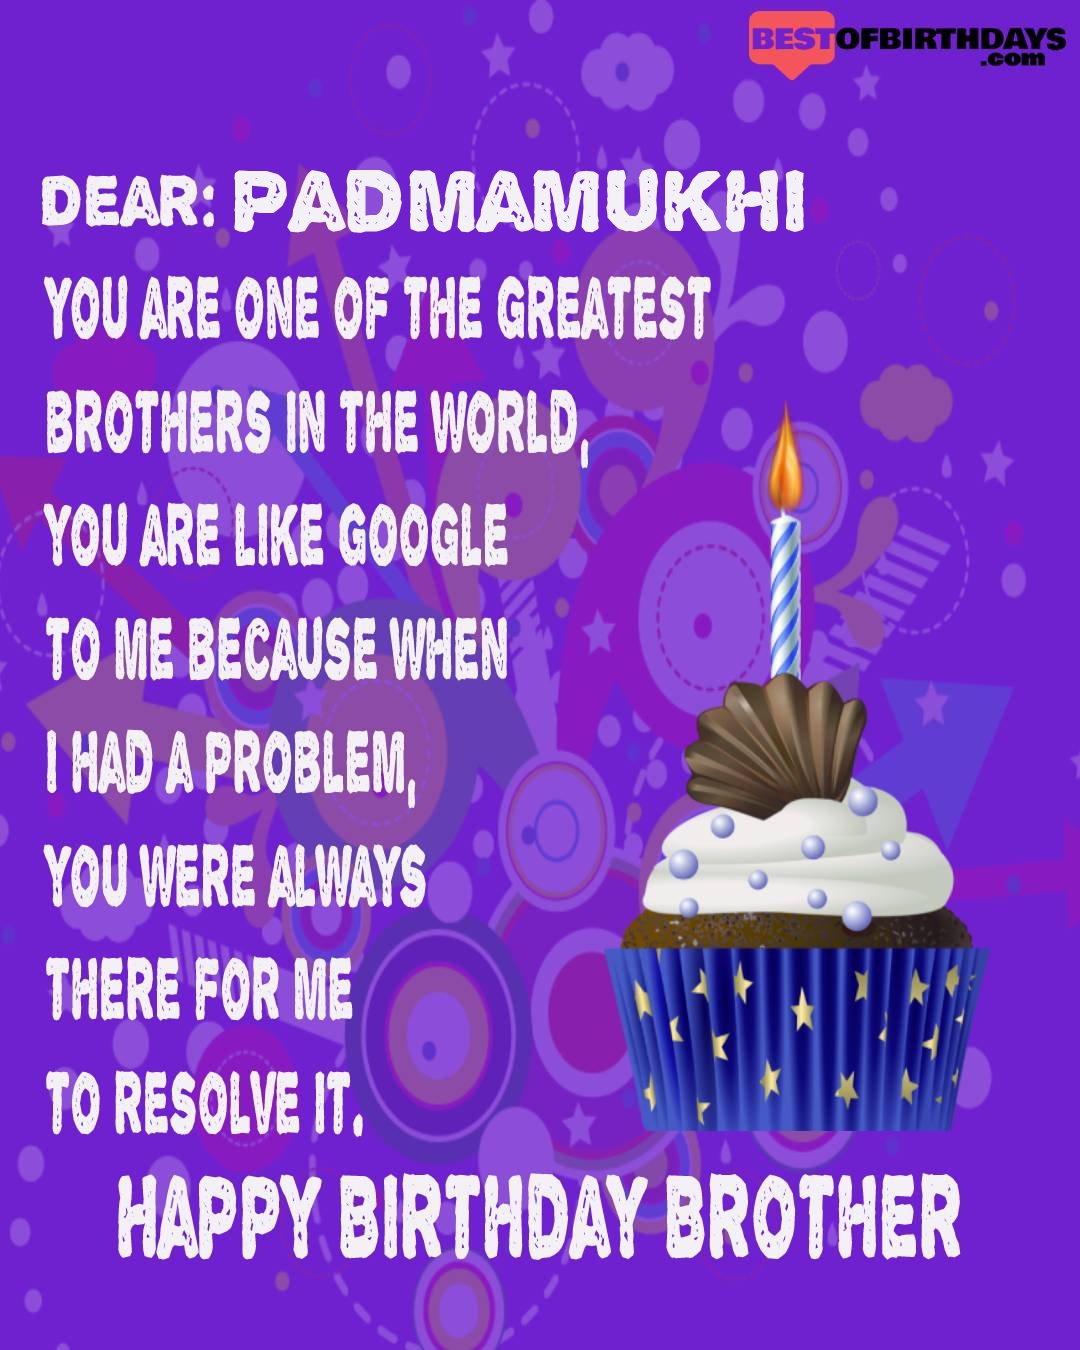 Happy birthday padmamukhi bhai brother bro